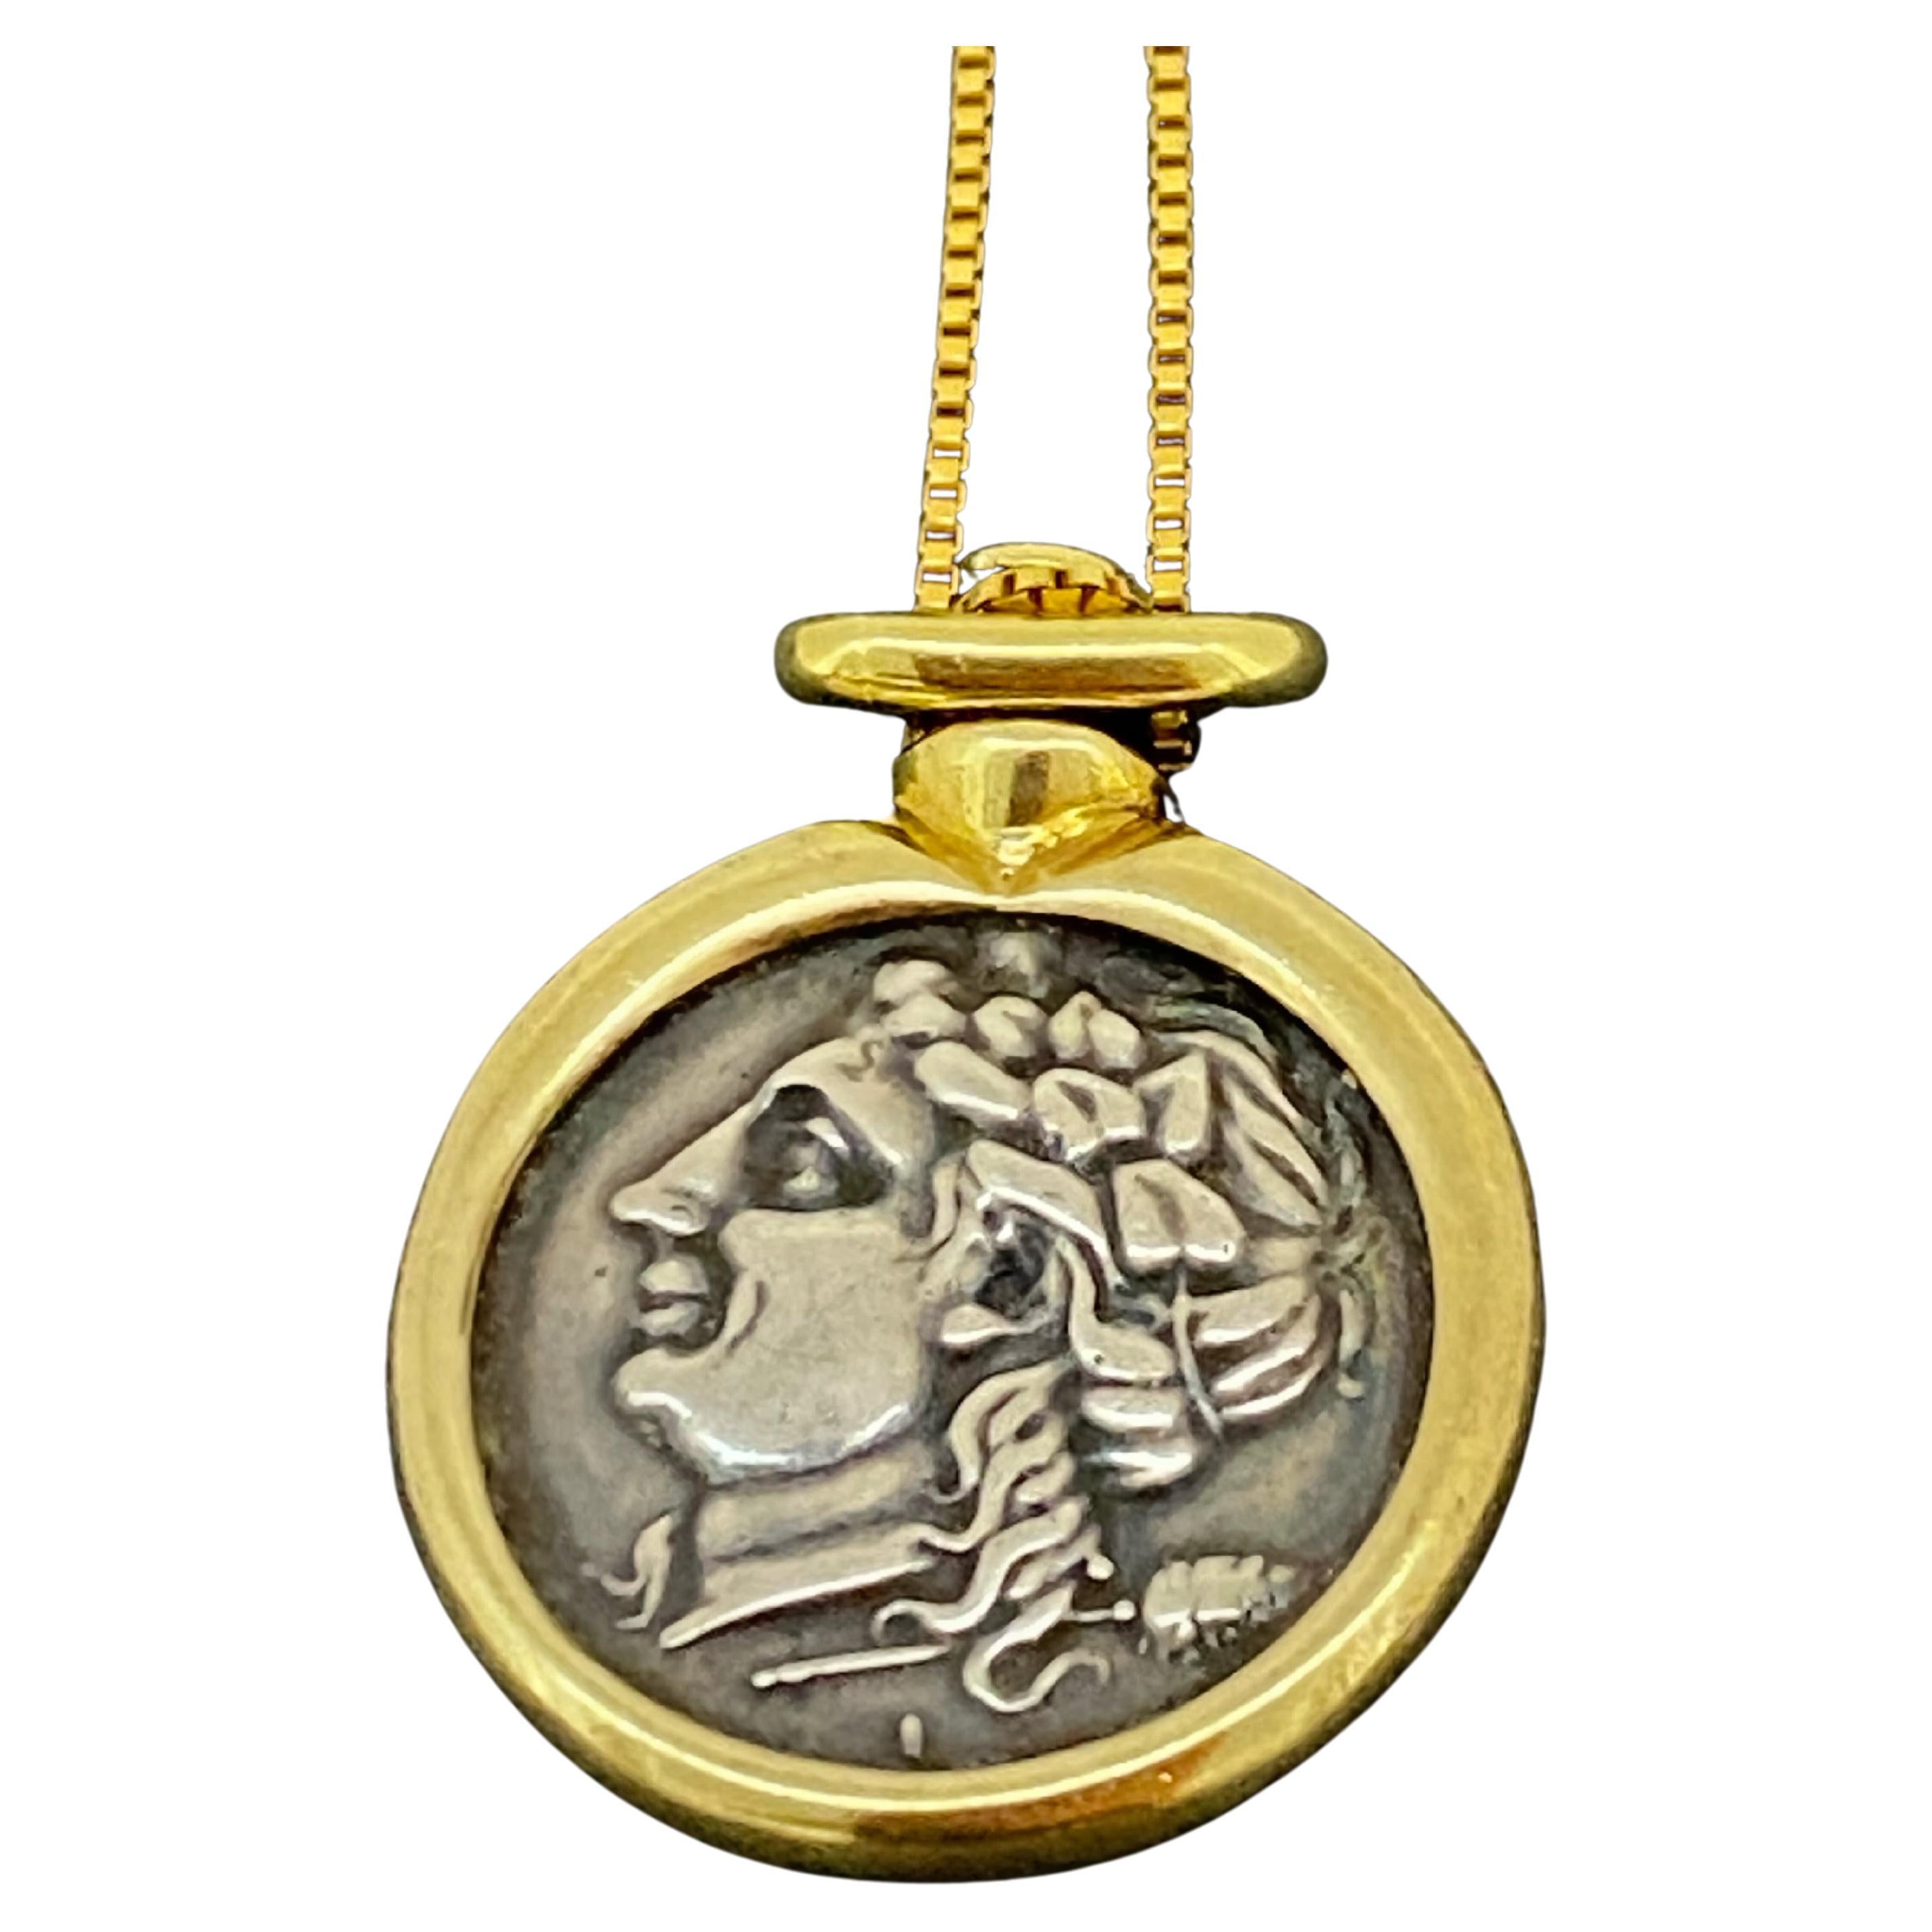 Ce pendentif vintage en or jaune 18 carats bicolore
est conçu comme une pièce de monnaie de la Grèce antique, 
représentant Hercule - 
Équivalent romain du héros divin grec Héraclès 
(célèbre pour sa force et ses aventures lointaines), 

entouré